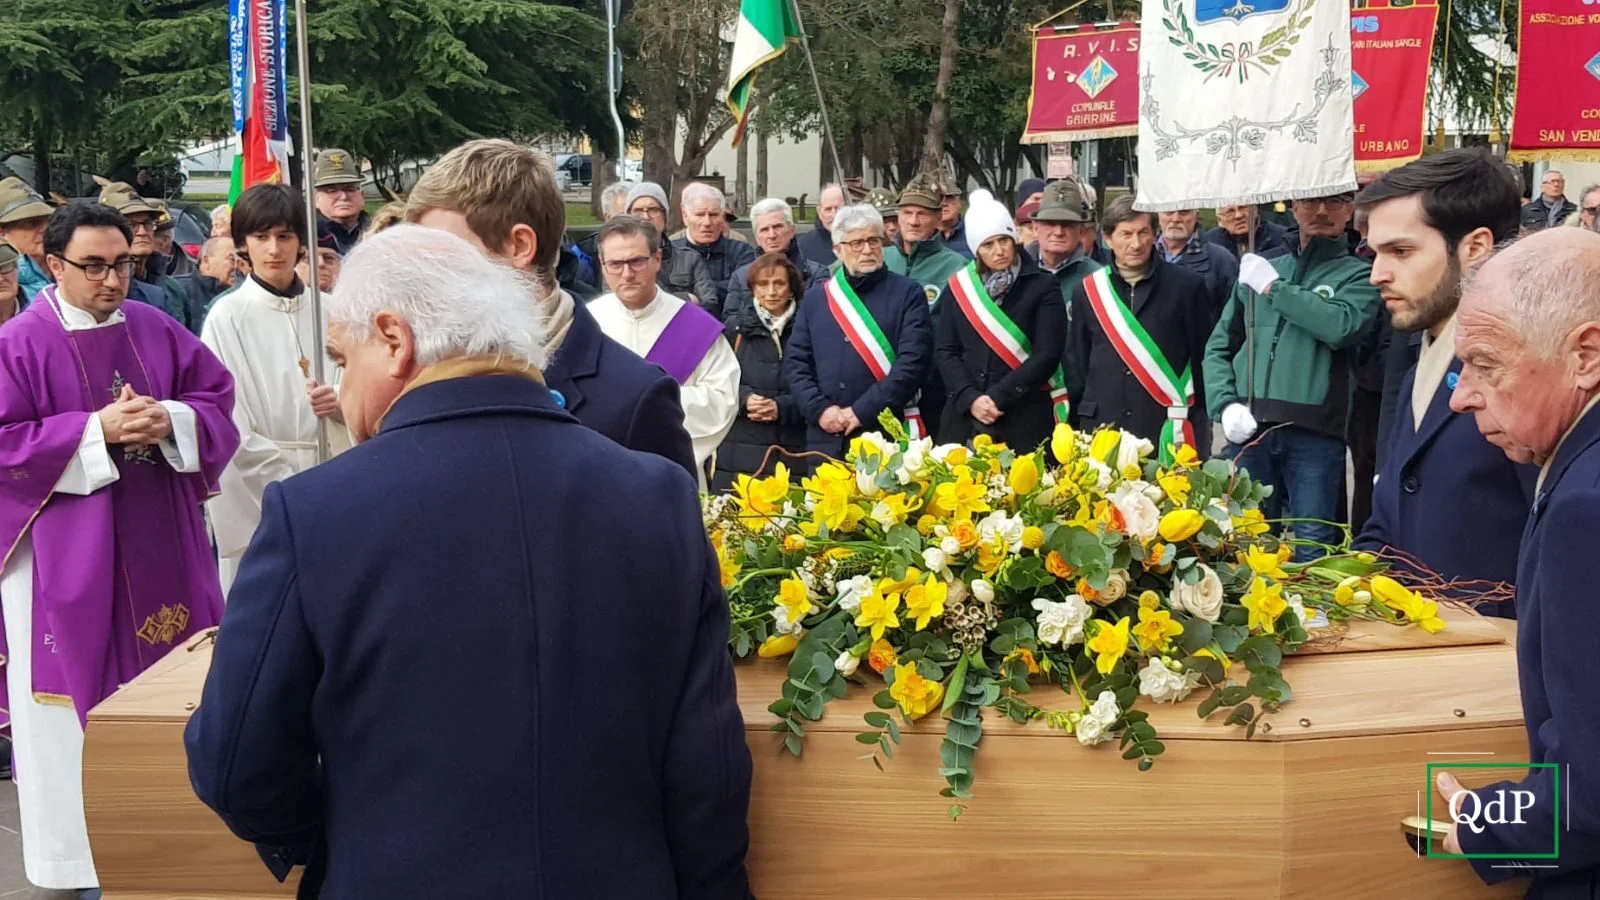 Il funerale di Silvano Fiorot